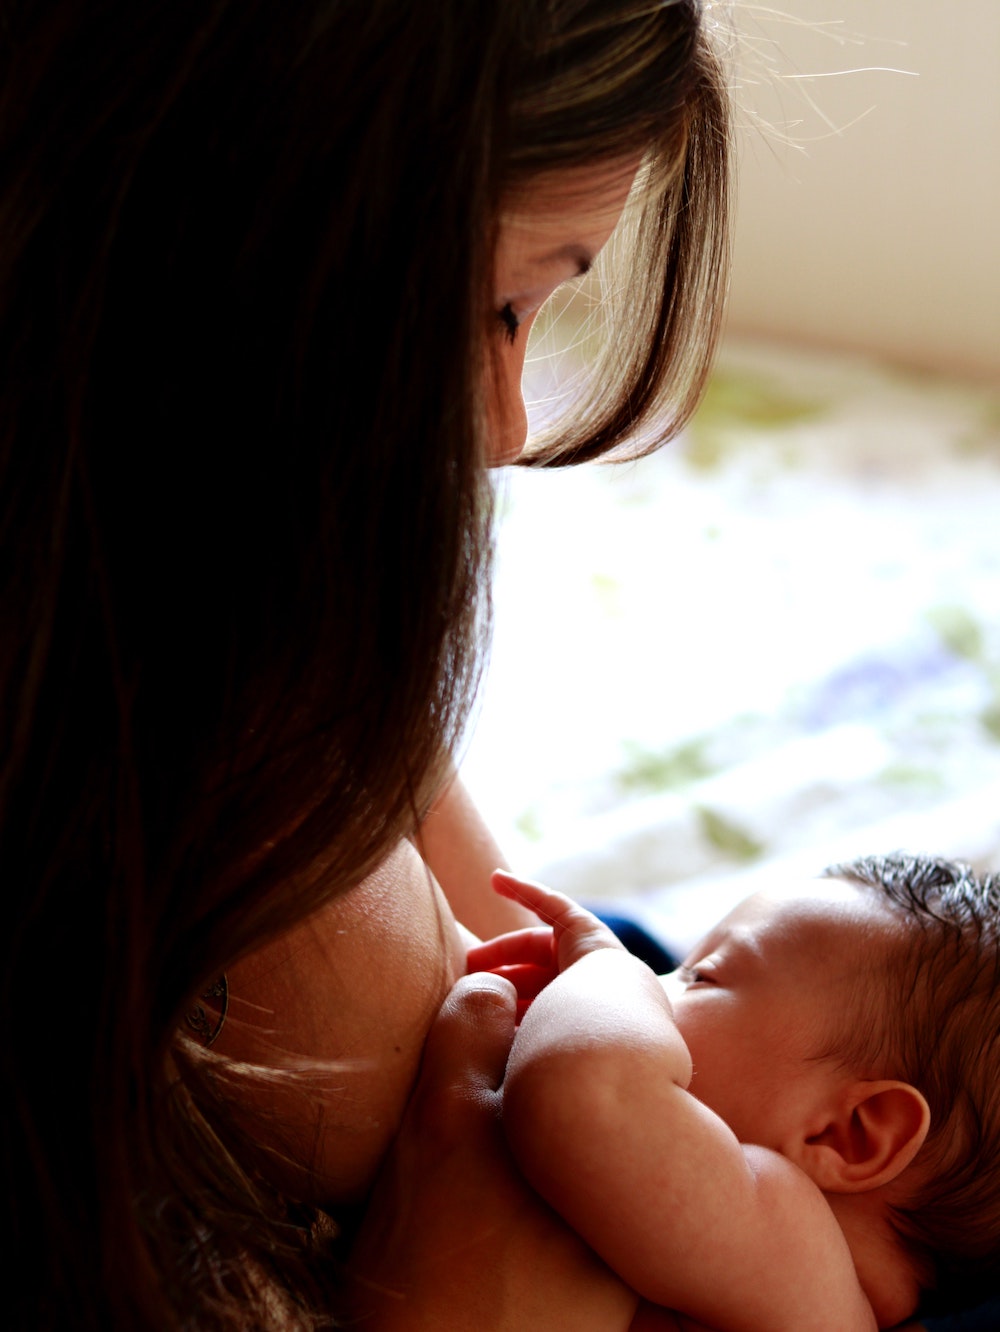 newborn baby nursing skin to skin with dark haired mother